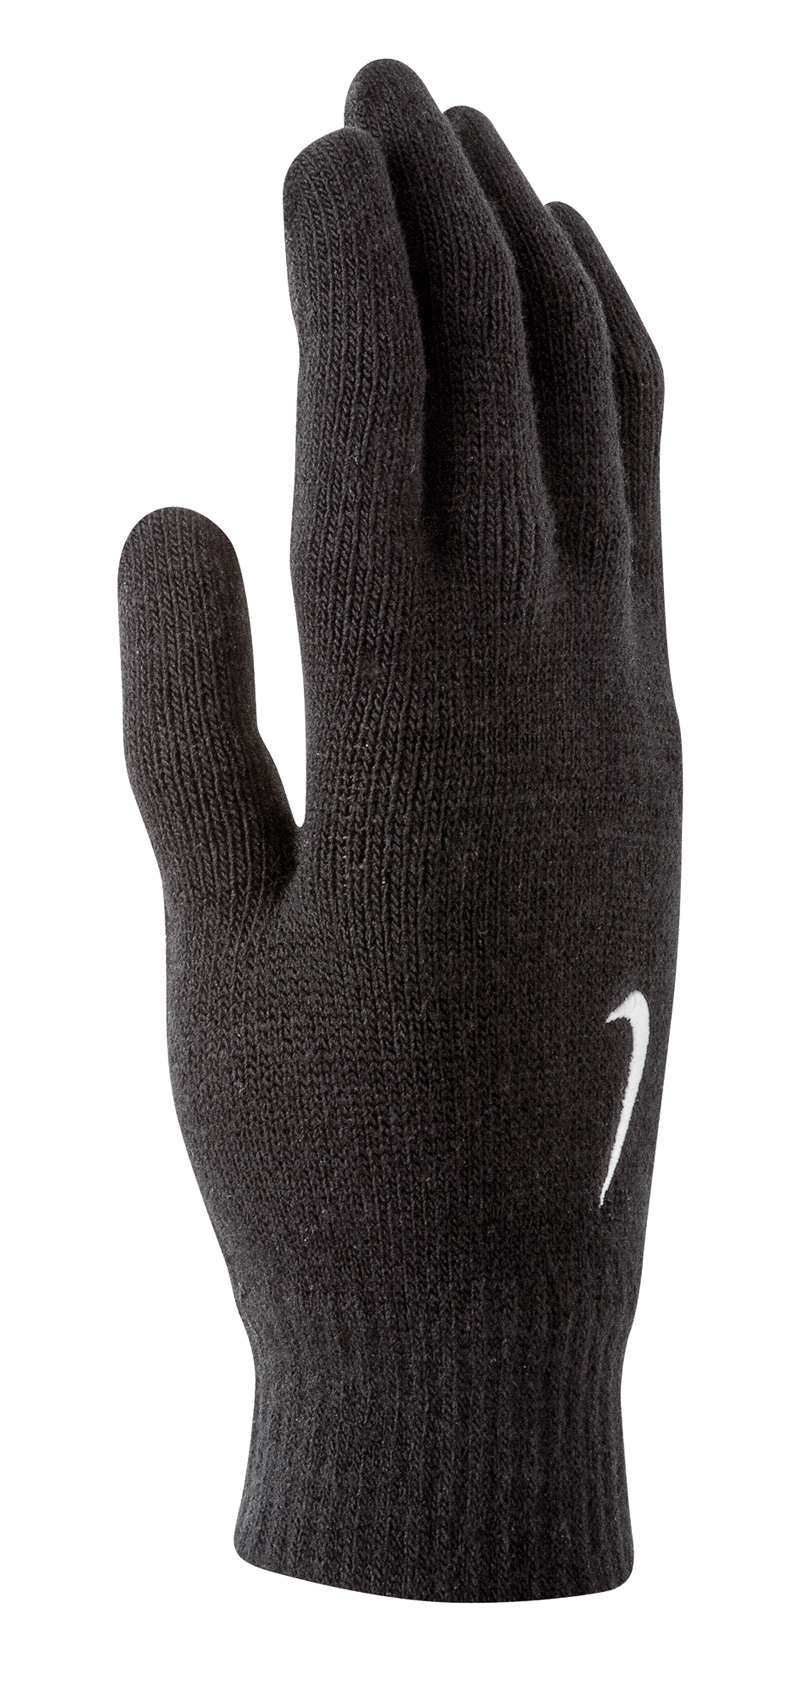 nike gyakusou tech grip knit gloves